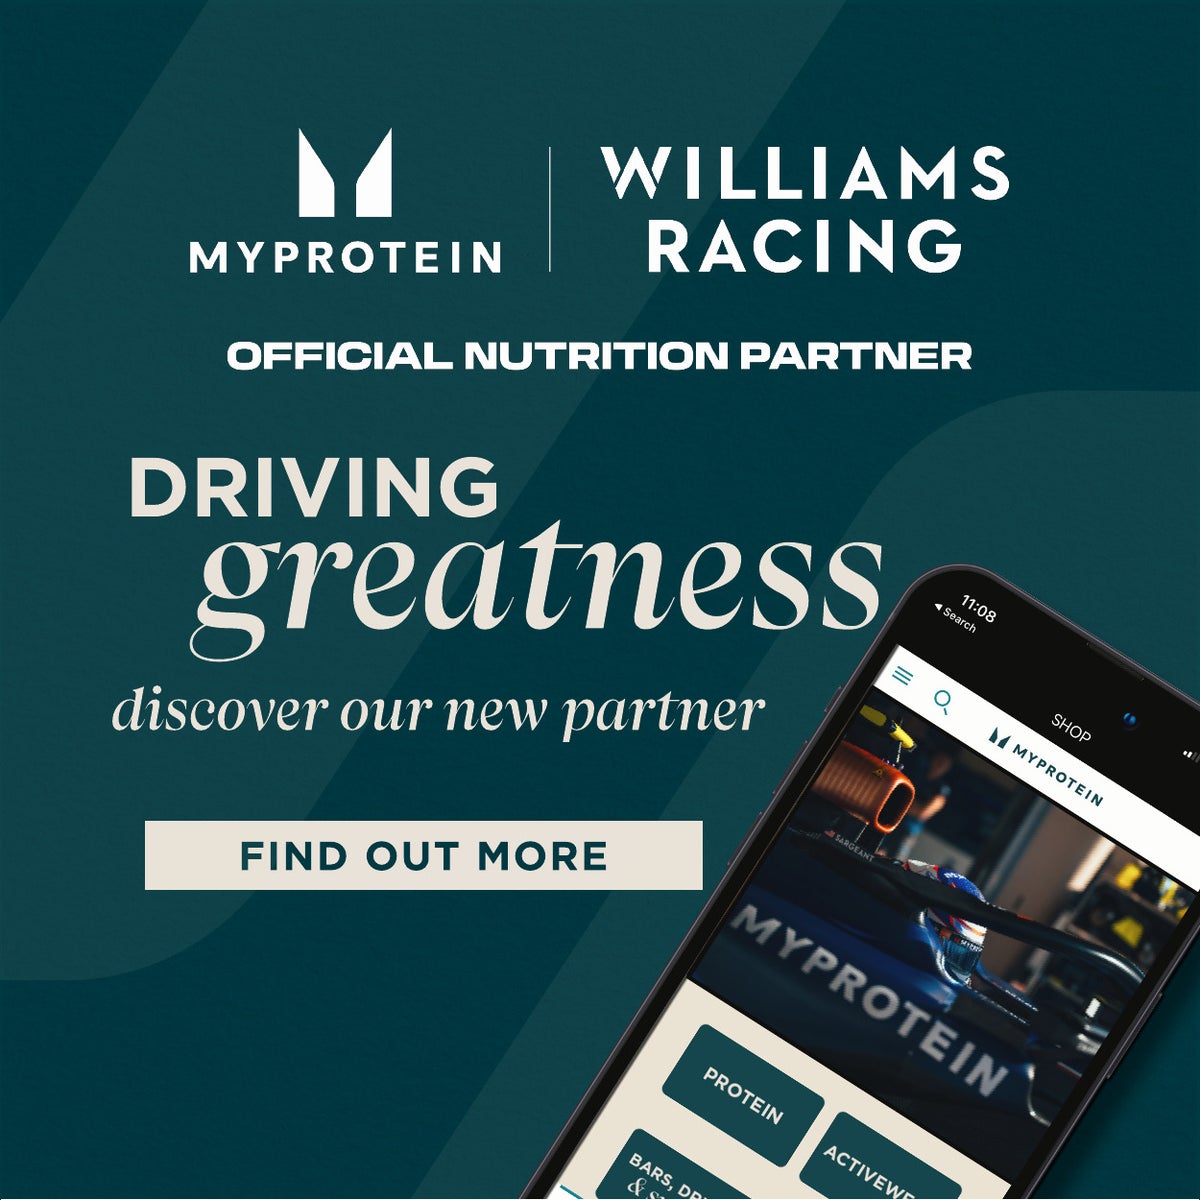 willams racing partnership